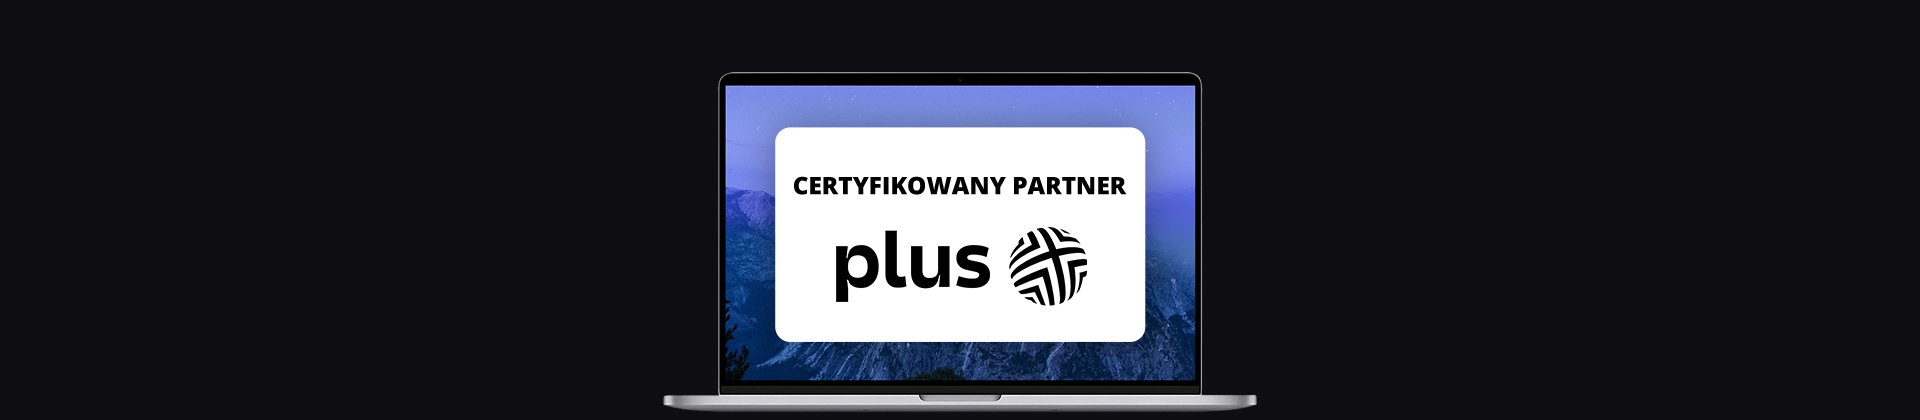 banner z ekranem laptopa, na nim logo firmy Plus i napis "certyfikowany partner"